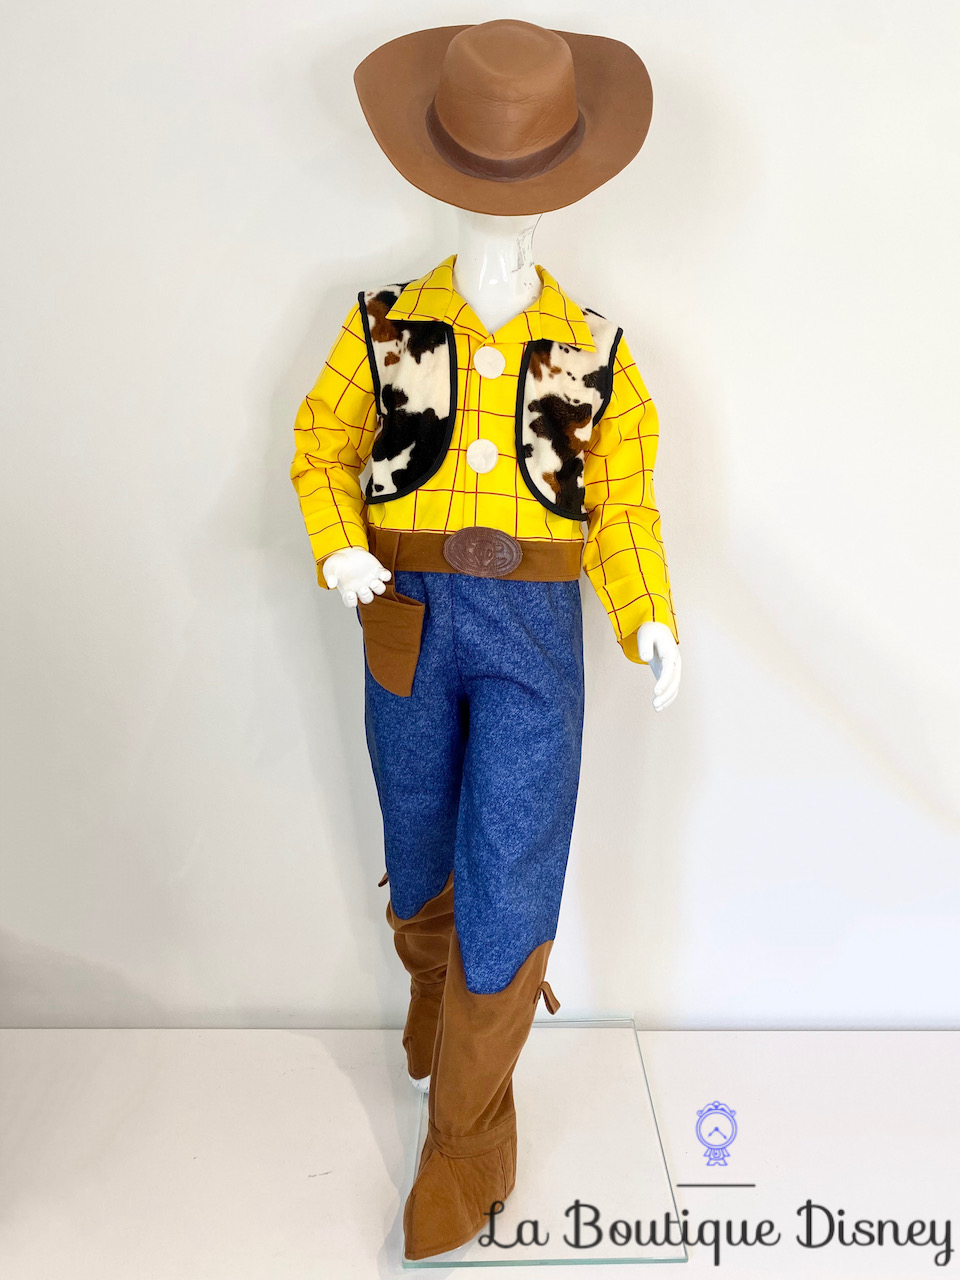 Déguisement Woody Toy Story Disney Store Exclusive taille 6-8 ans cow boy jaune bleu chapeau marron